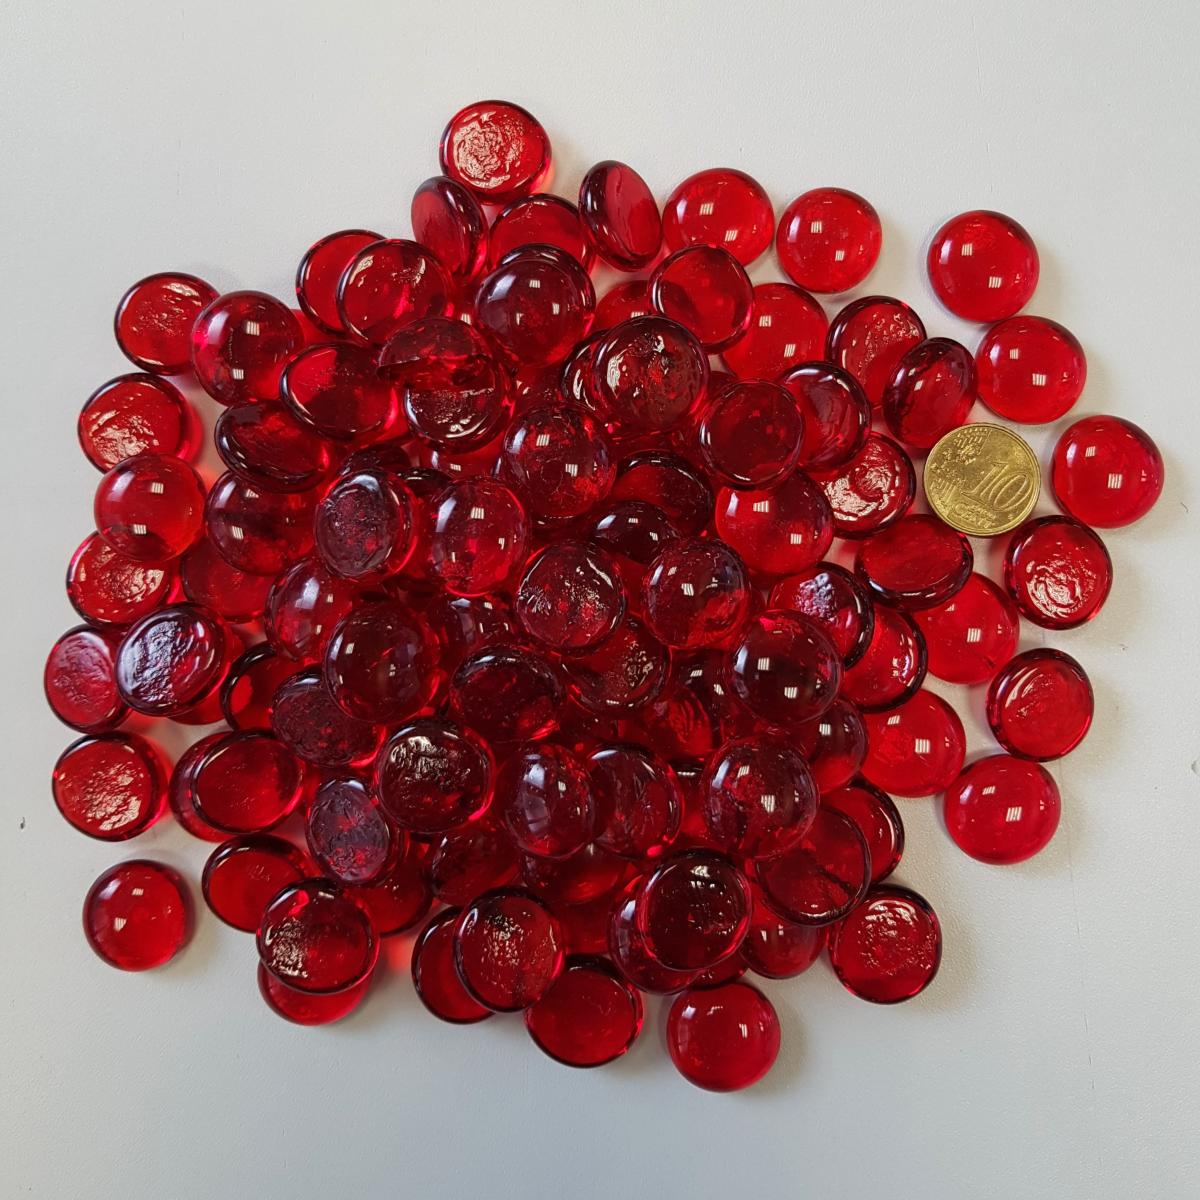 Billes en verre opaque photo stock. Image du rouge, sphère - 196235972